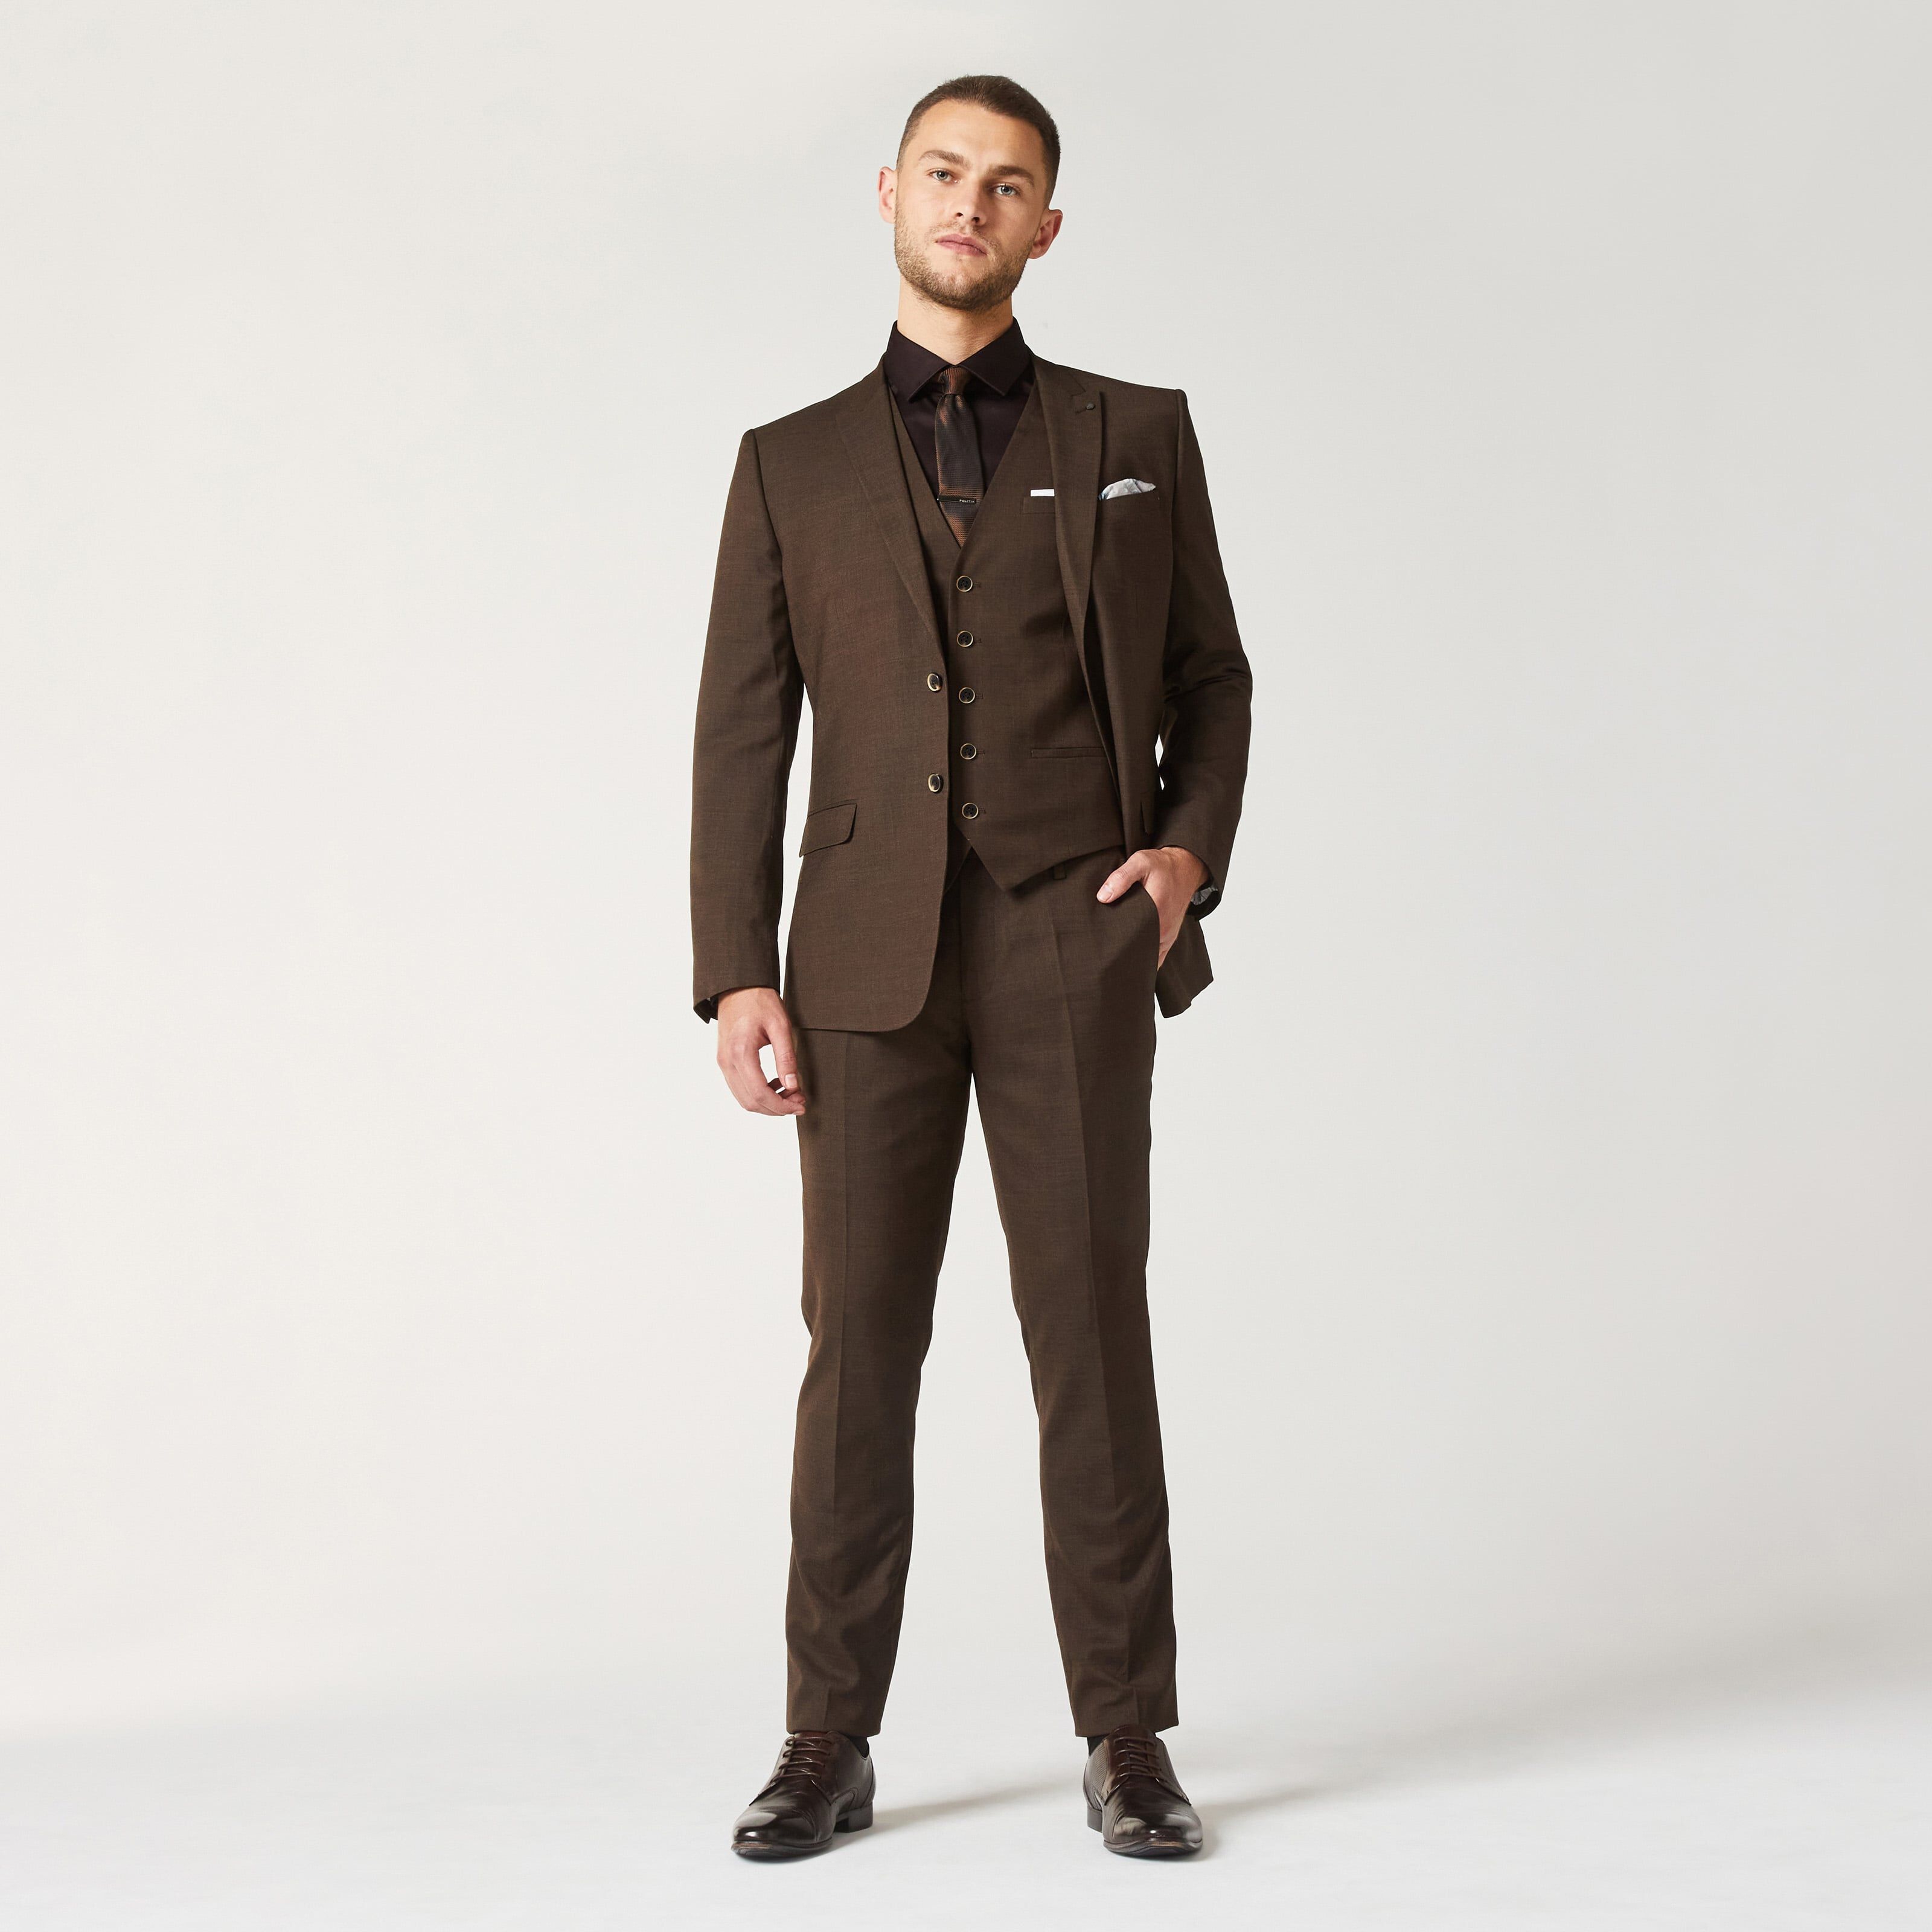 Men's Brown Suits - Dark & Light Brown Suits | MrGuild